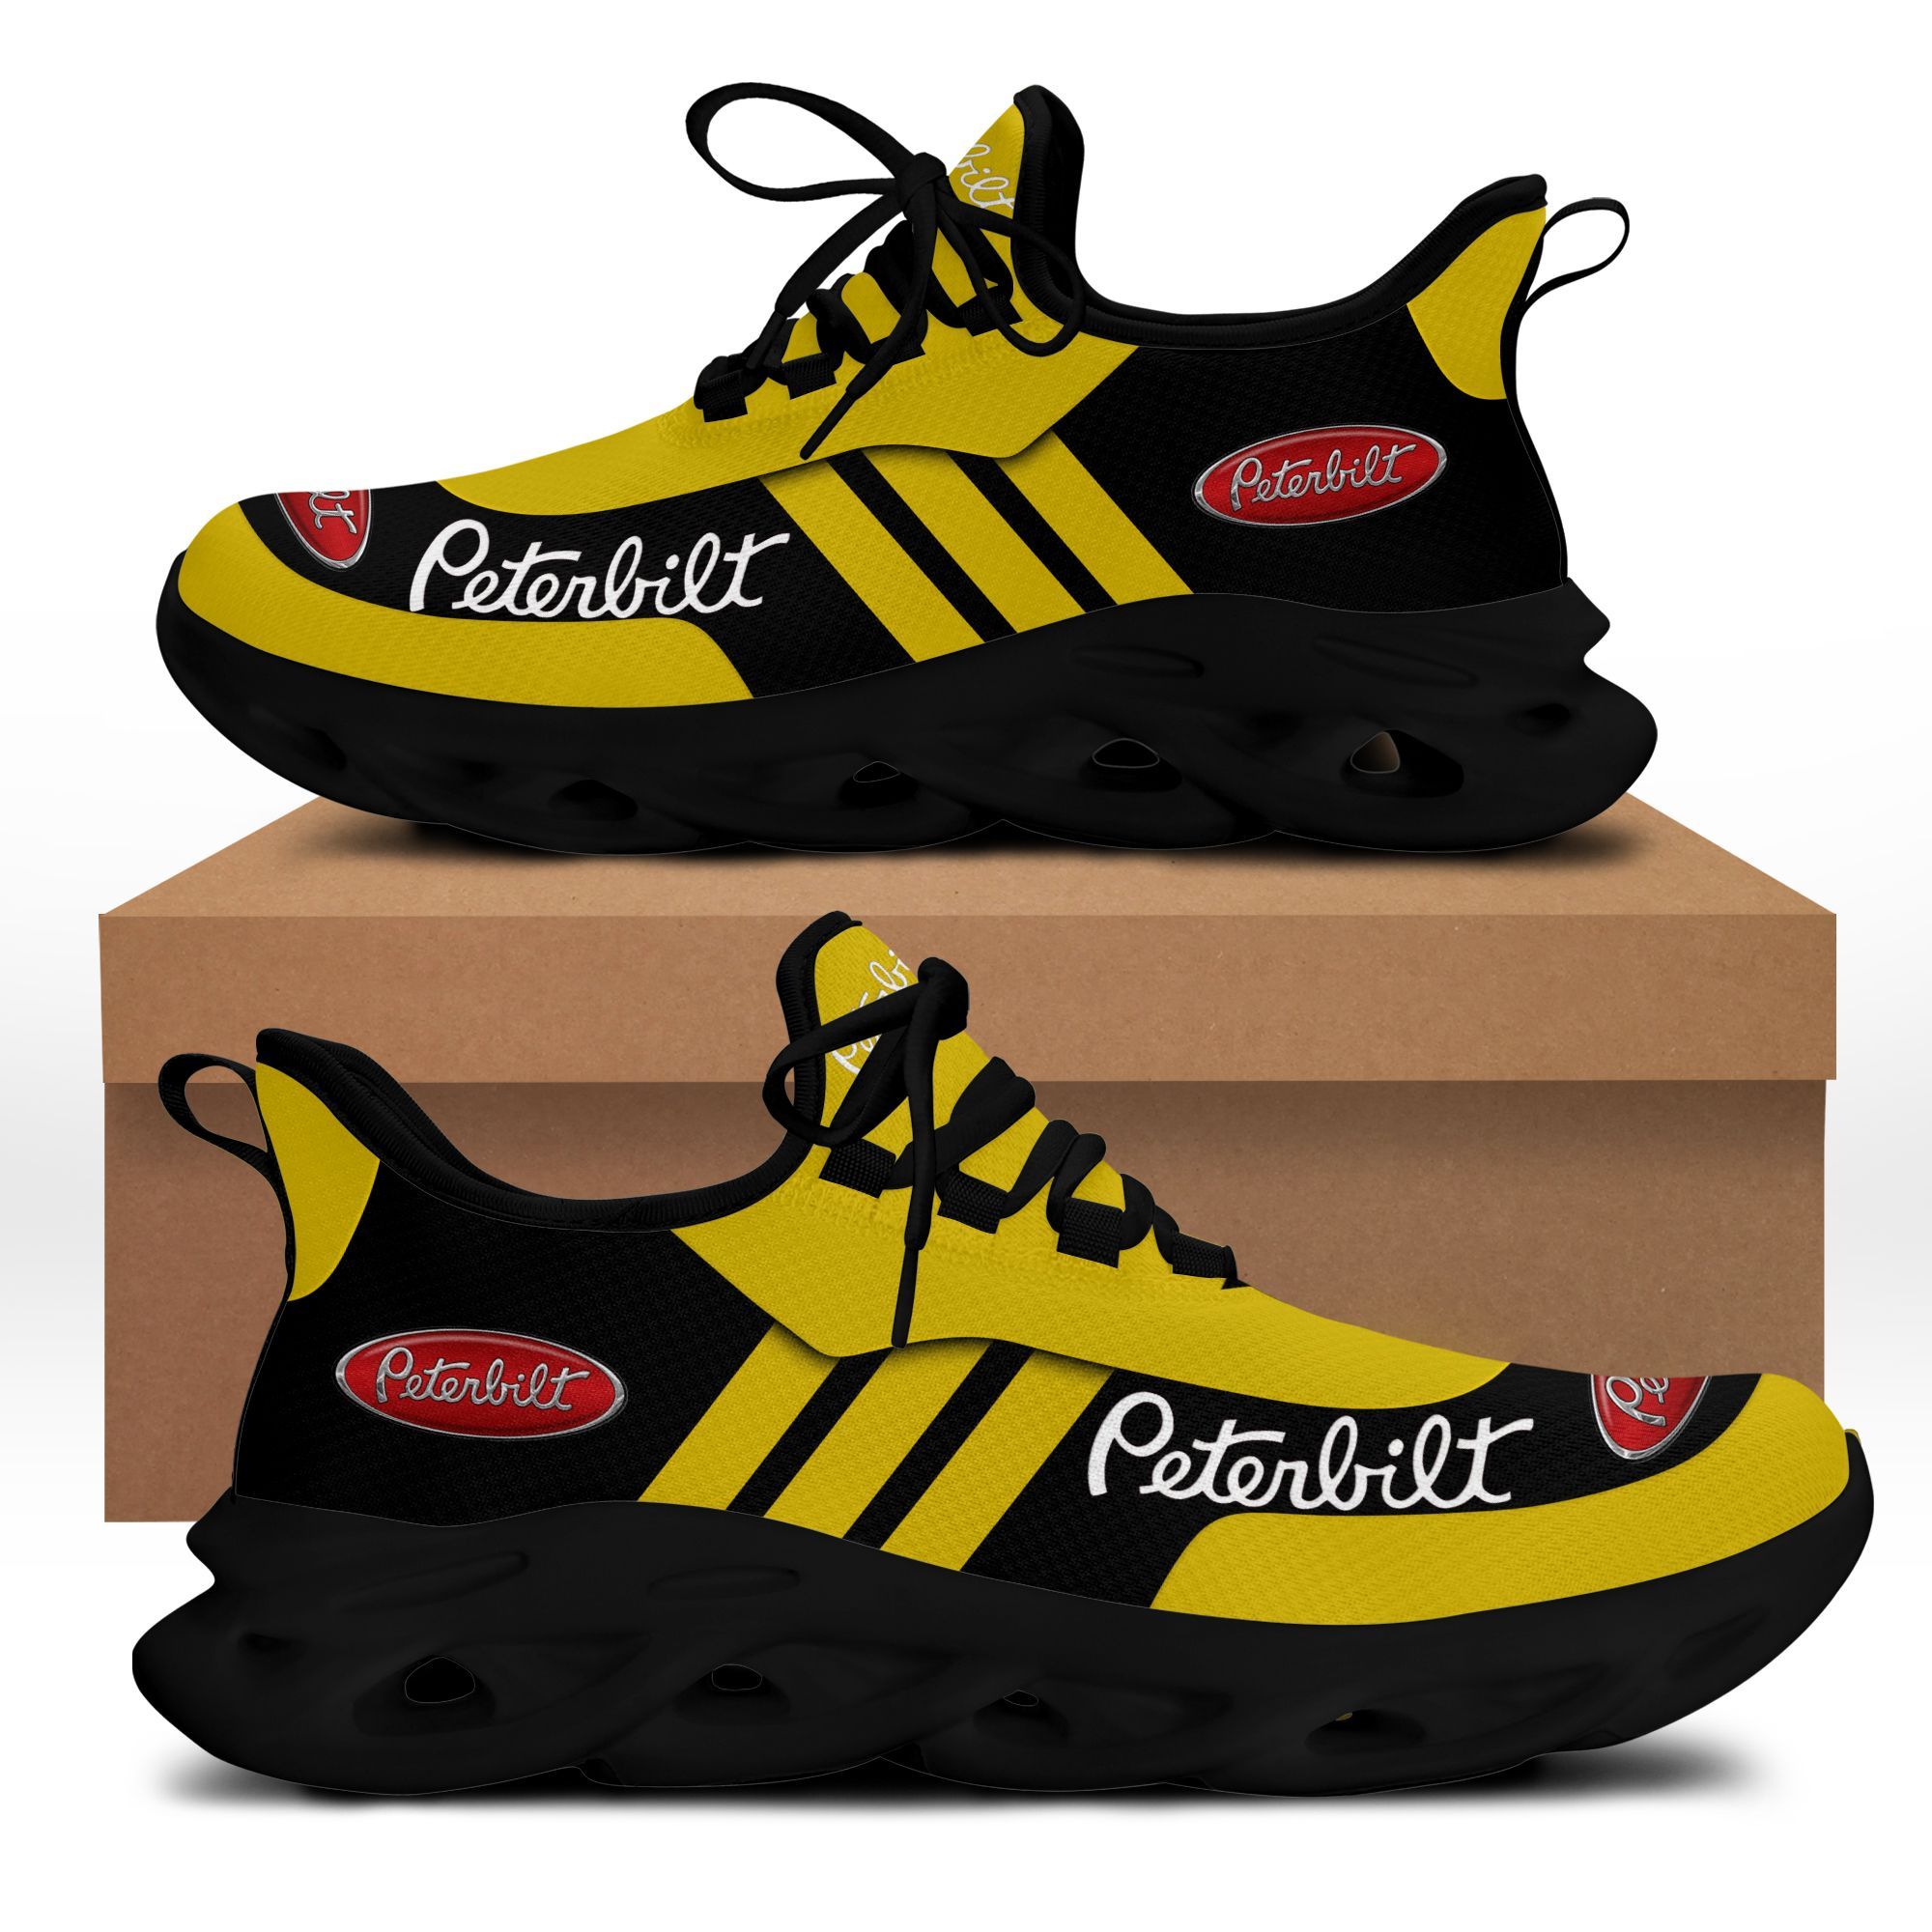 Peterbilt DVT-NH BS Running Shoes Ver 1 (Yellow)